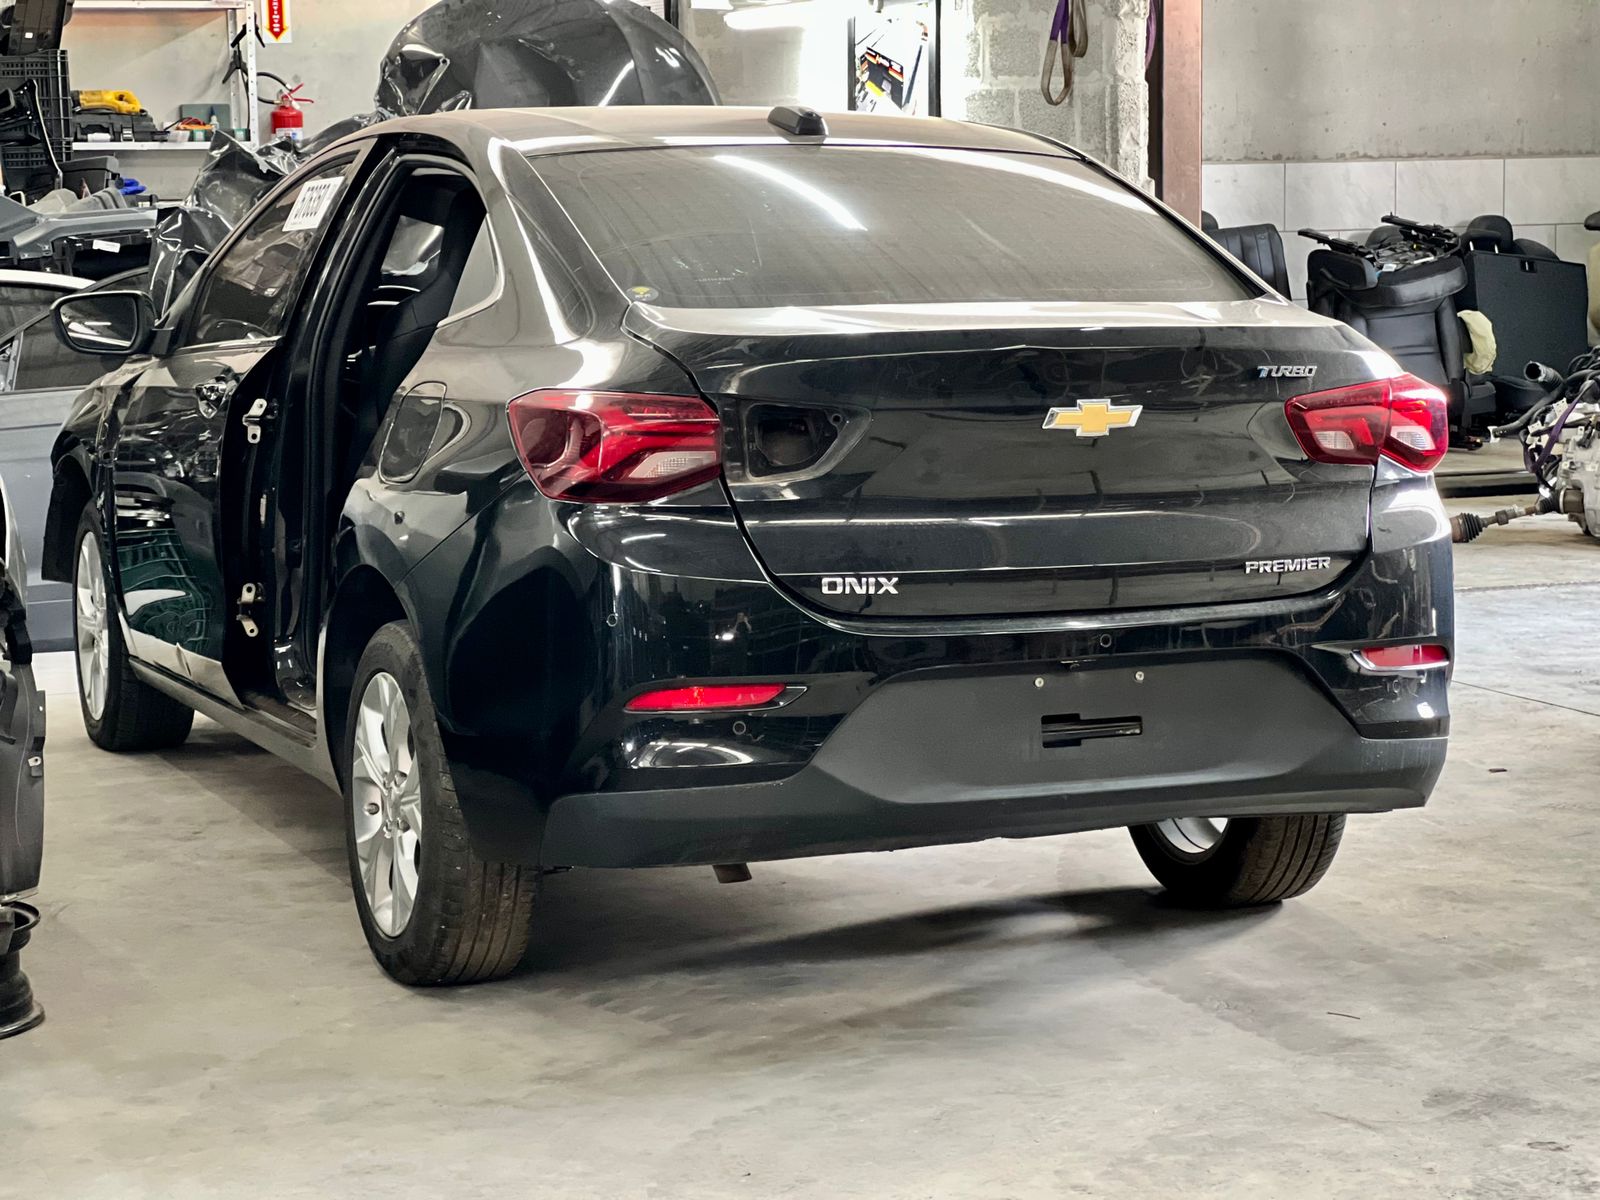 Andamos no novo Chevrolet Onix RS 2021: confira o vídeo, Falando de Carro